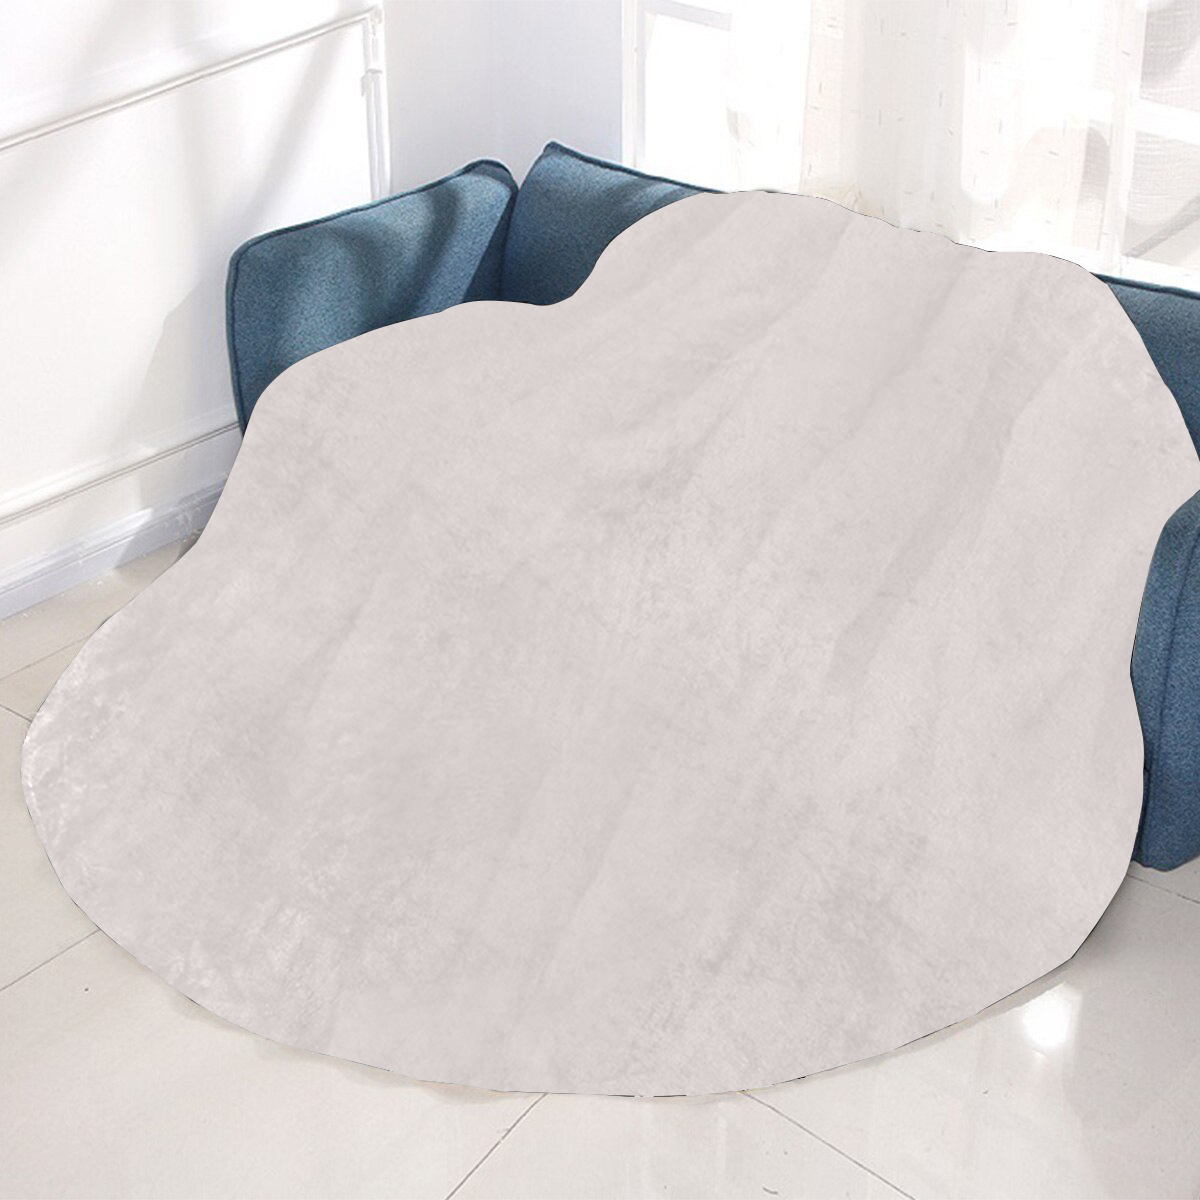 Circular Ultra-Soft Micro Fleece Blanket 47"